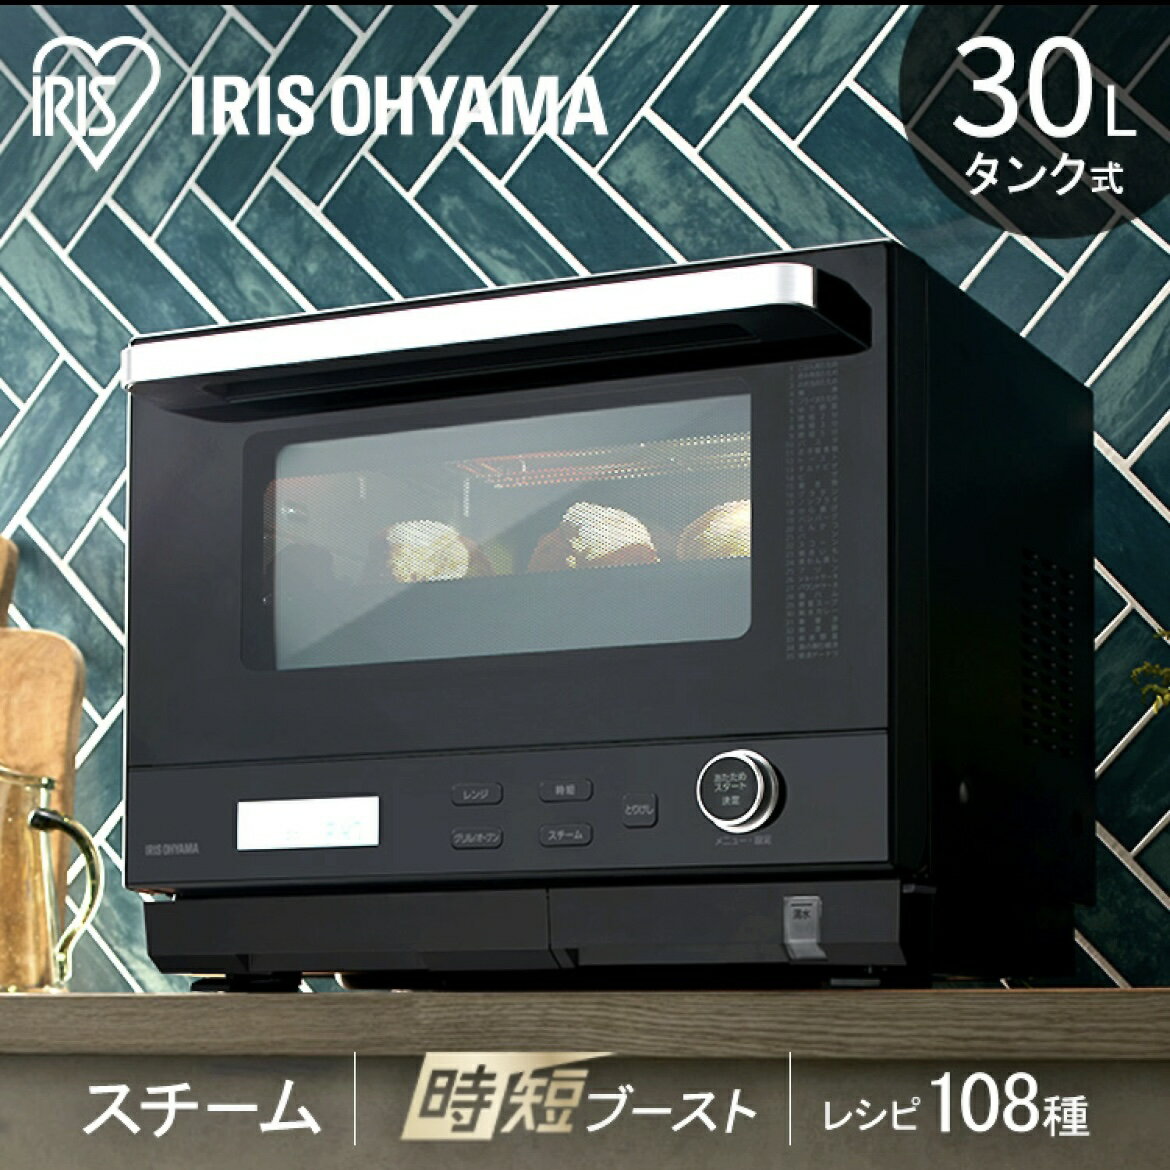 日本🇯🇵空運直送‼ iris ohyama ms-f3001 蒸氣烤箱